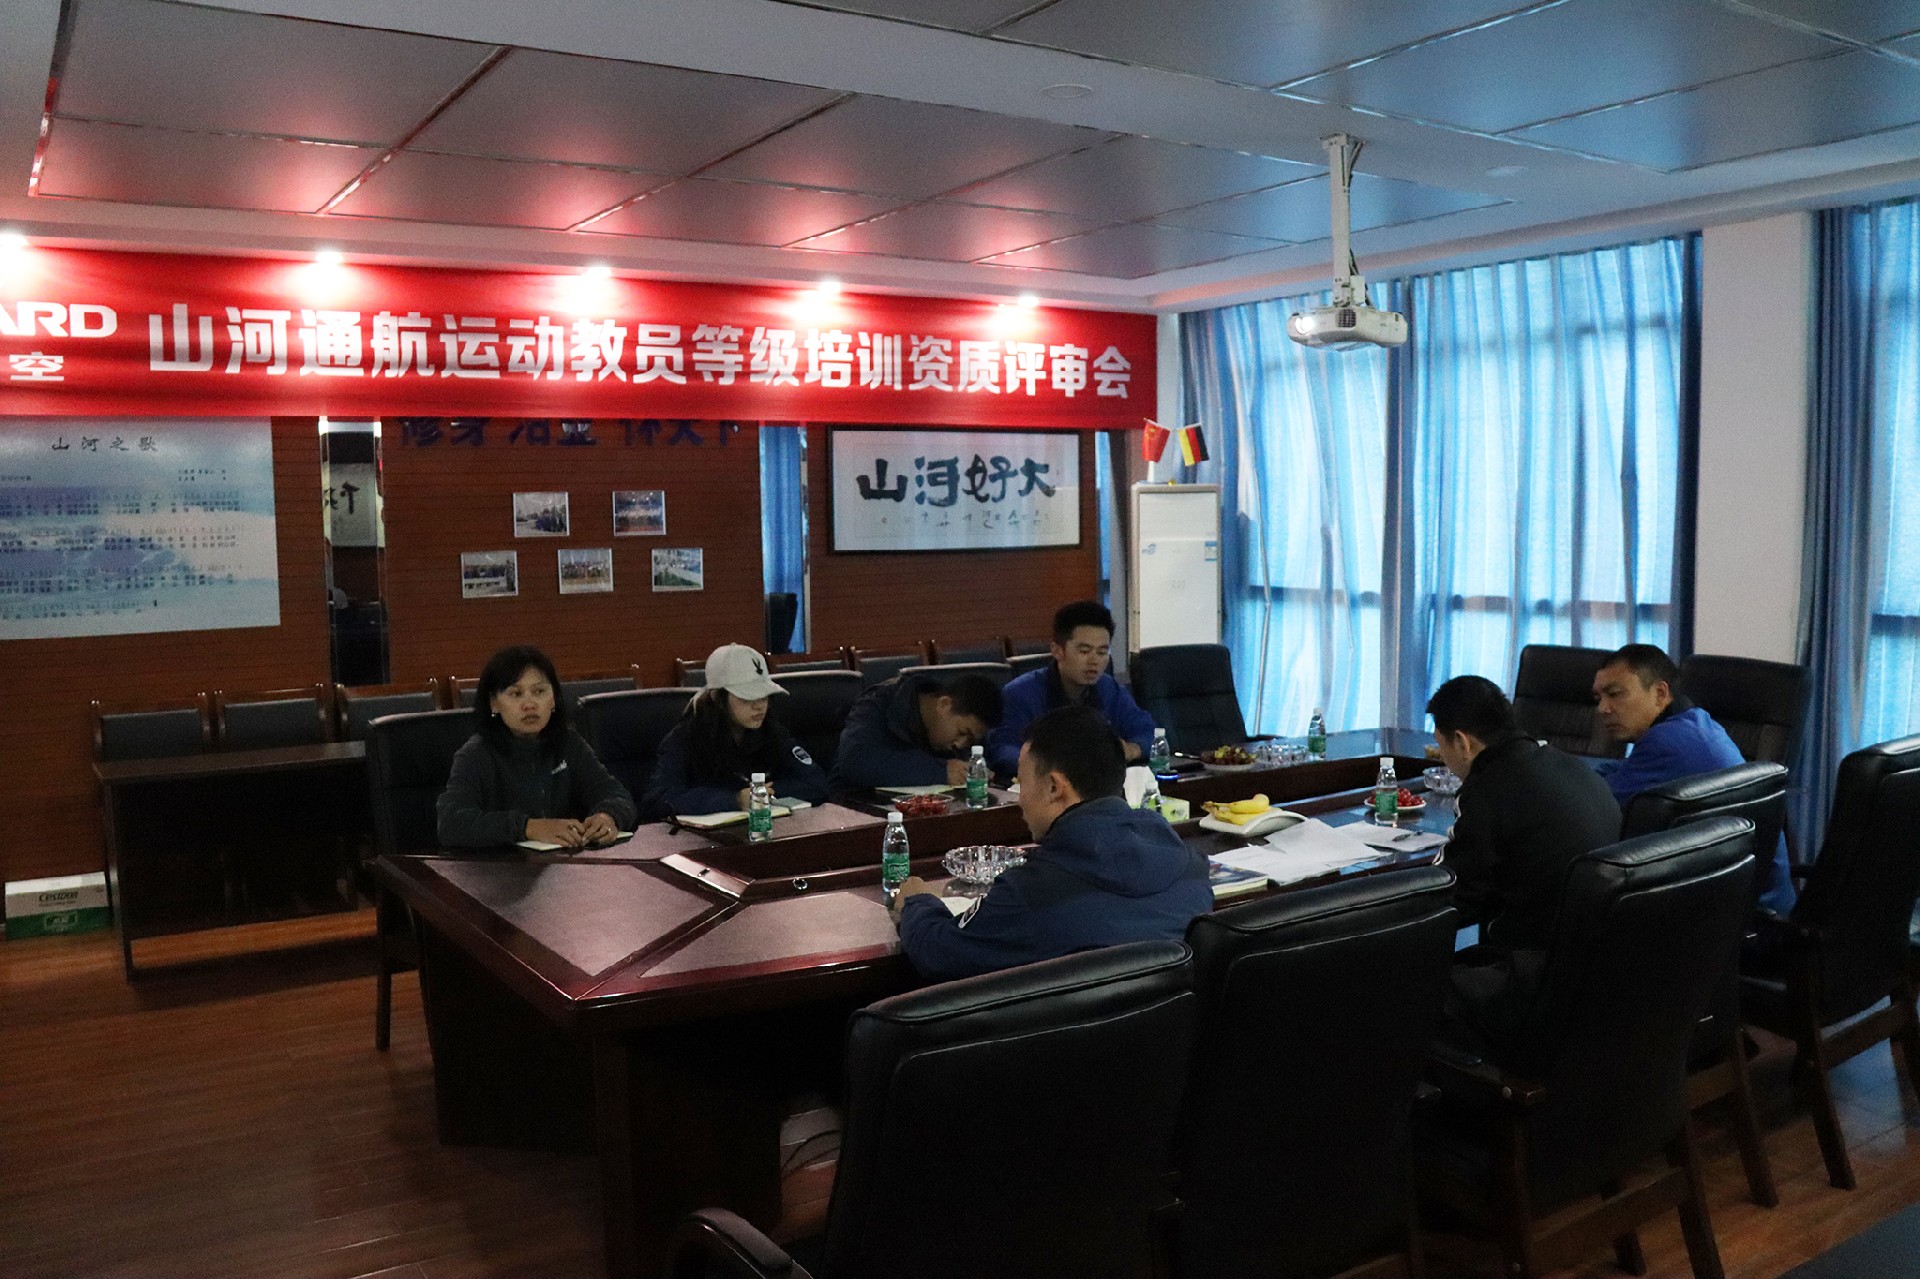 山河通航成为湖南省首家初级飞机教员培训资质单位